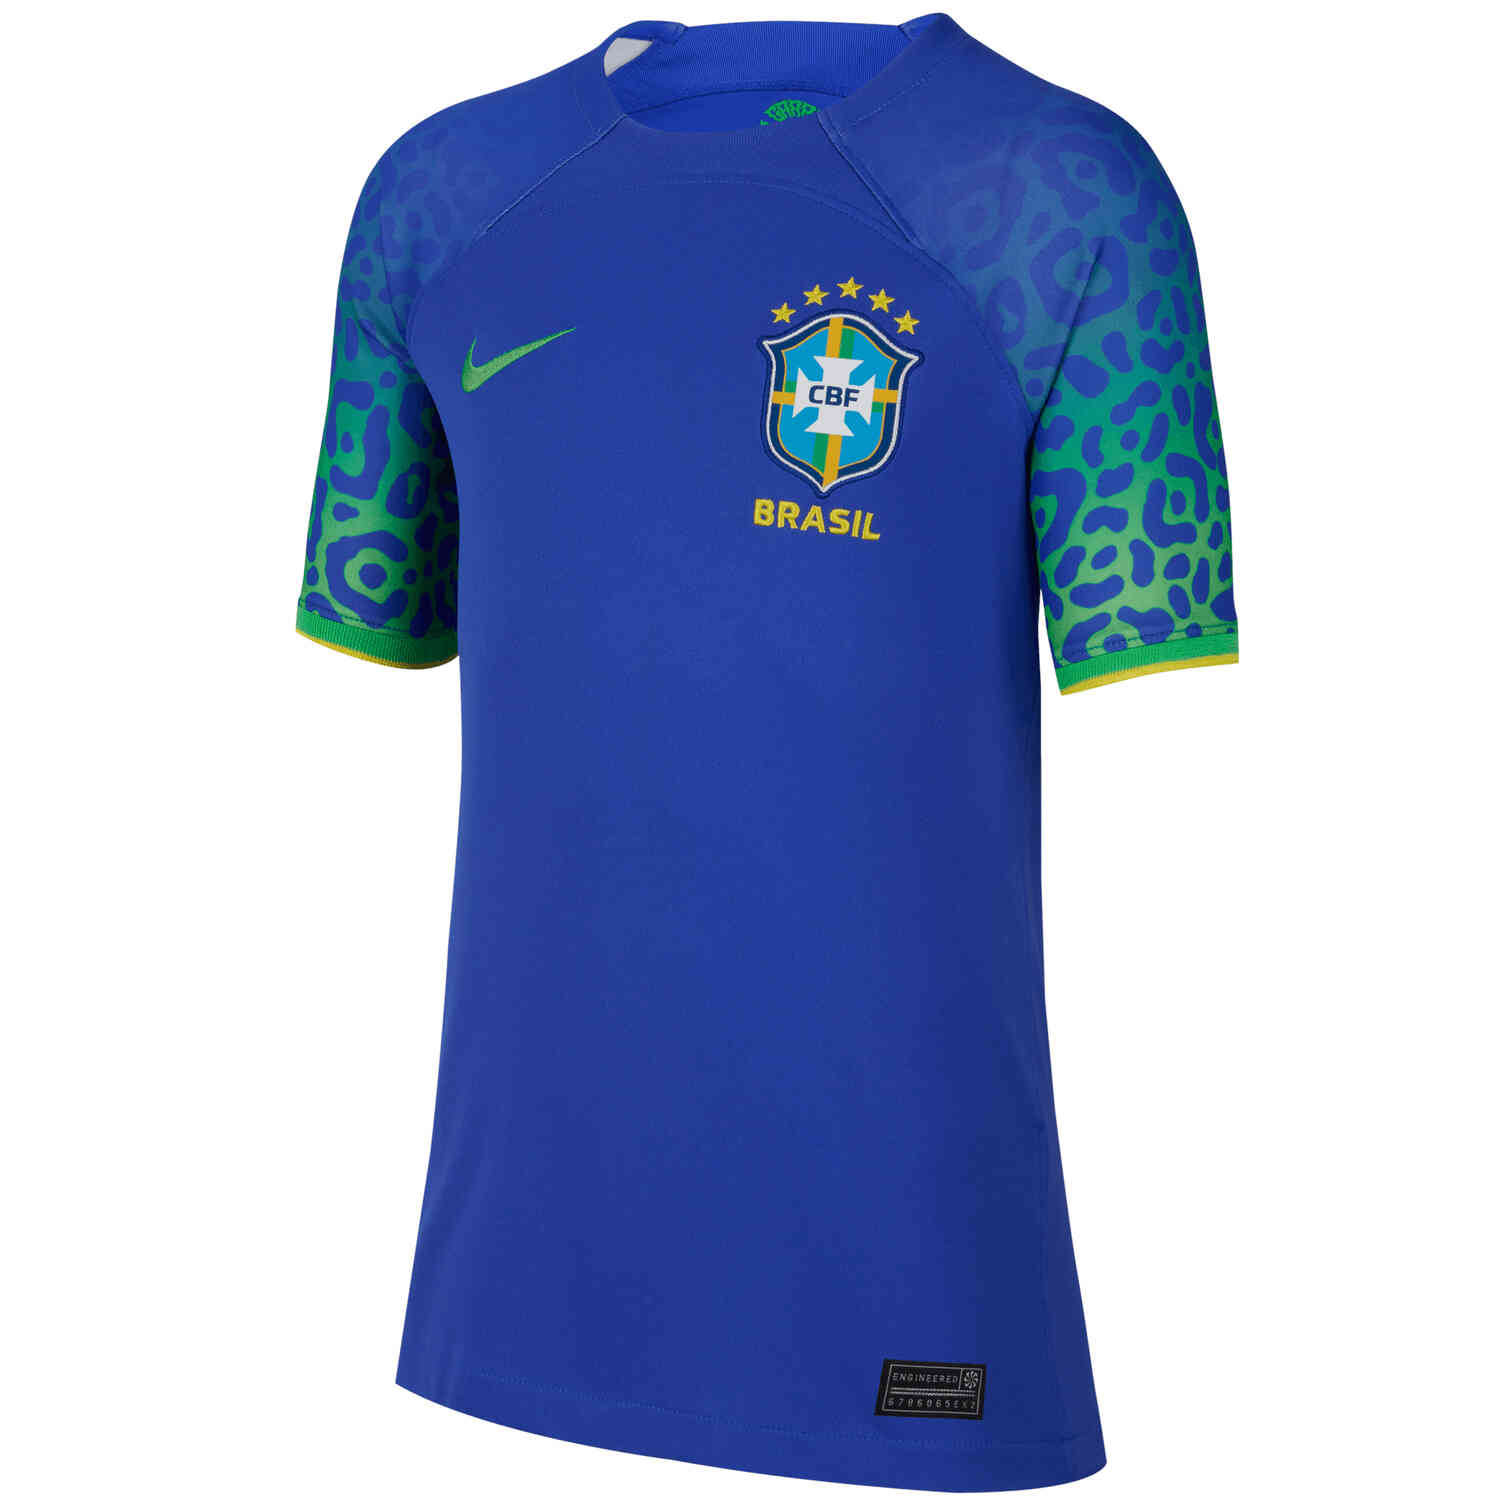 brazil jersey,brazil t shirt,brazil football jersey,brazil football jersey  for kids,brazil football jersey for boys,brazil jersey for boys,brrazi